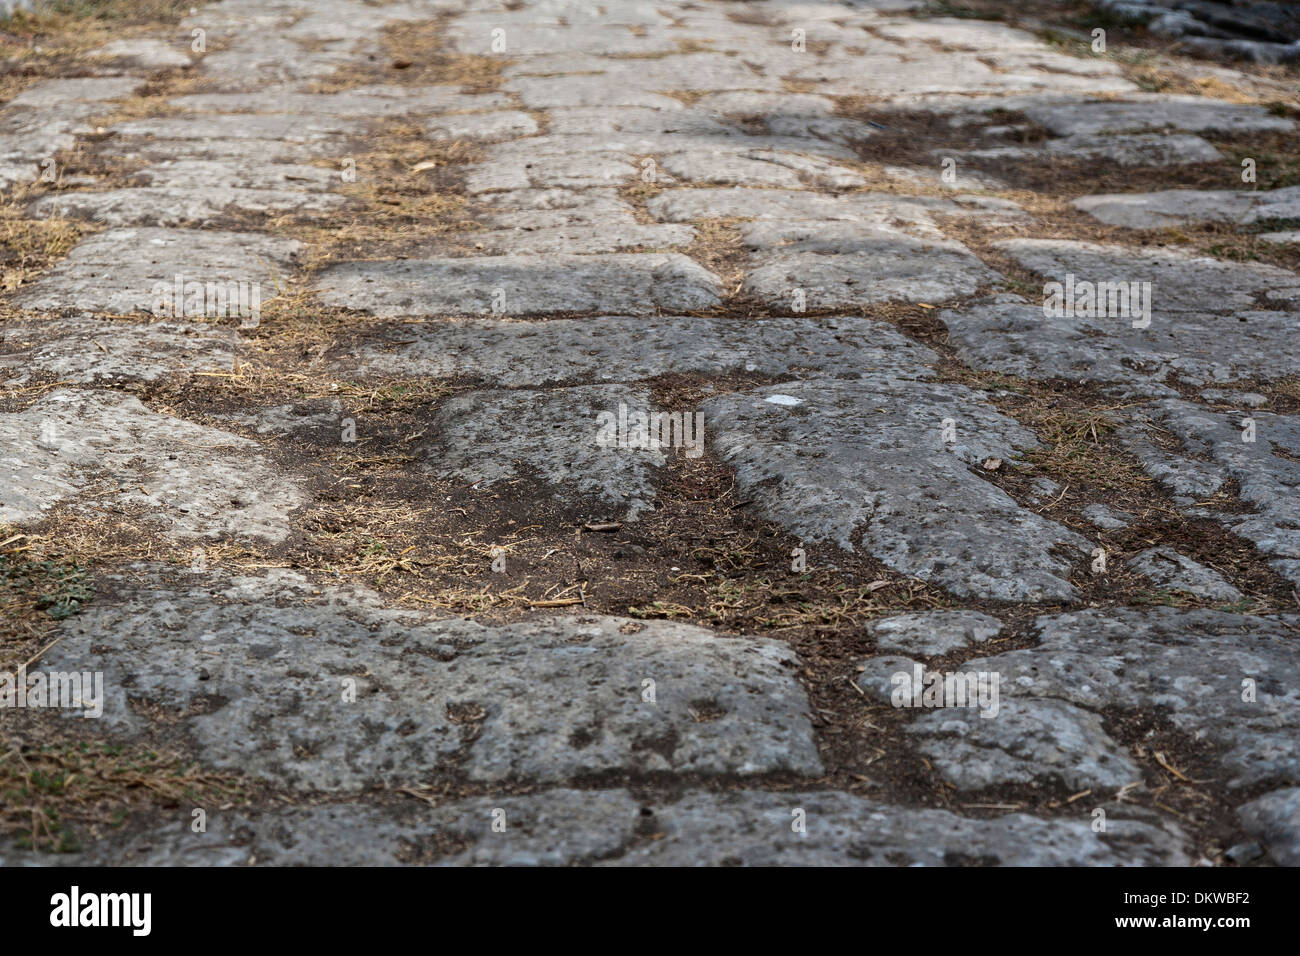 Kos Archeologia Archeologia park di scavo del sito di scavo di canali di guida corsie grecia Europa porto isola pareti parete Mare Foto Stock